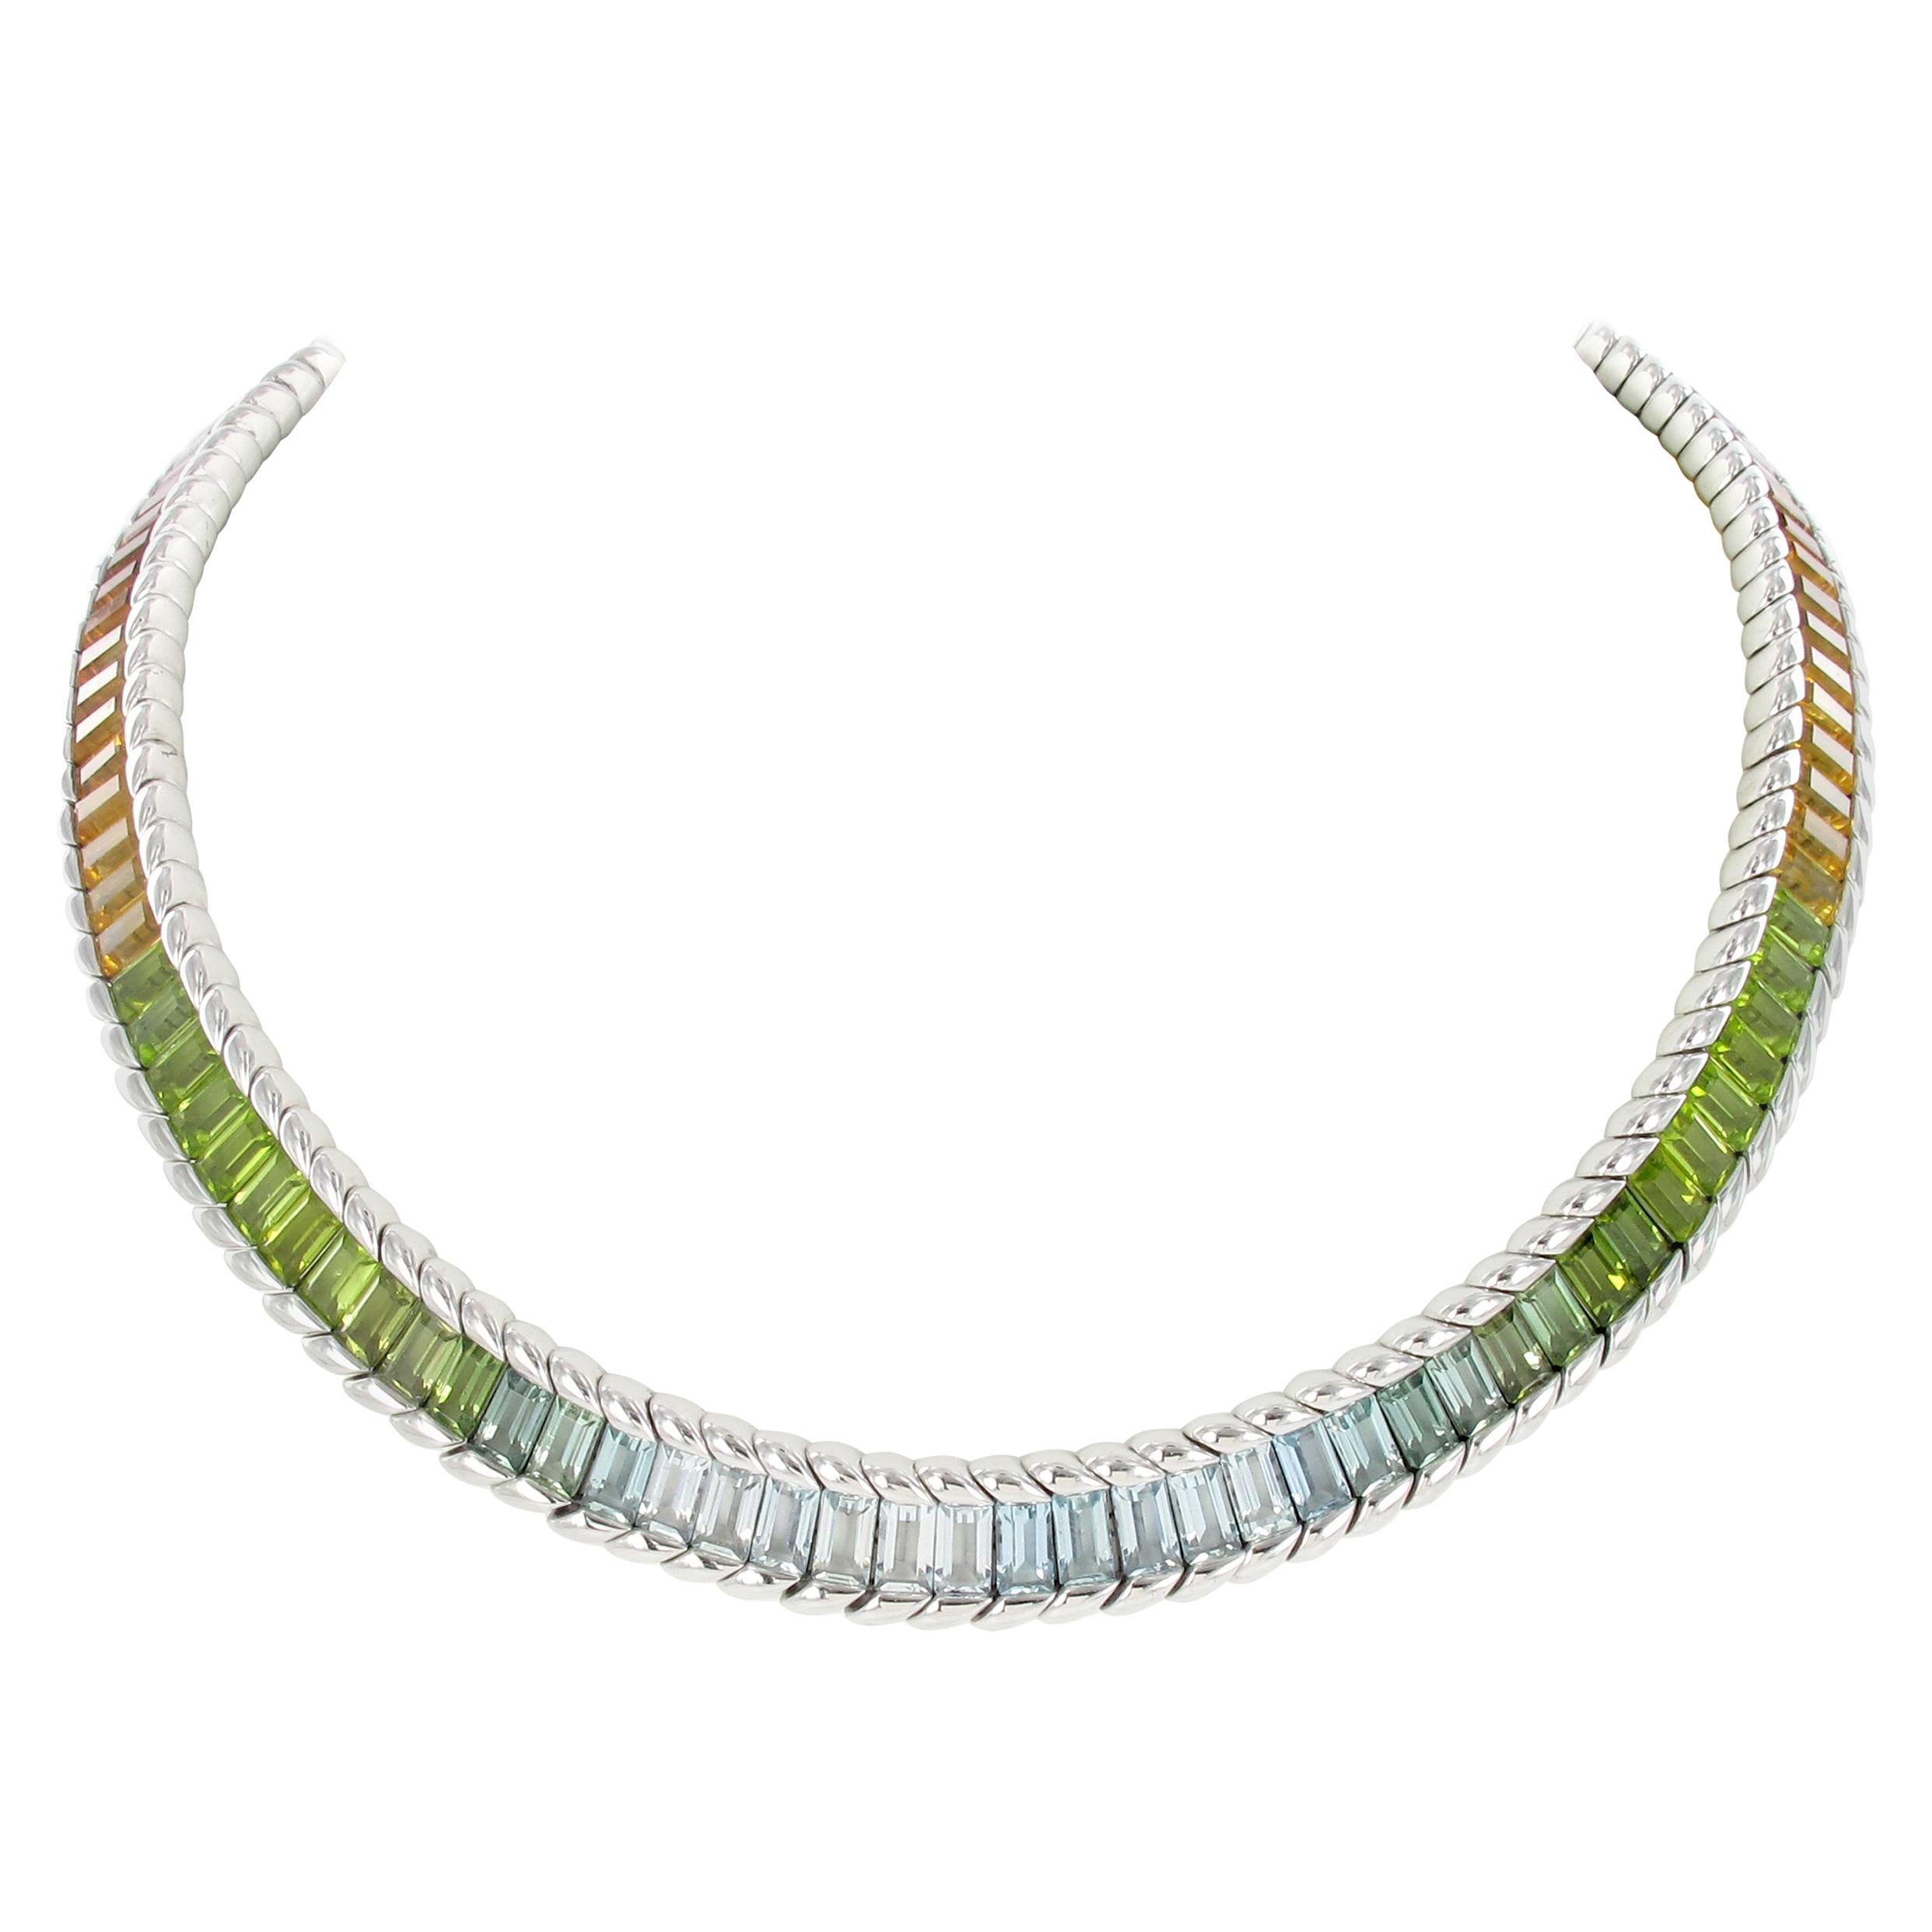 Gubelin Rainbow Necklace in White Gold 18 Karat